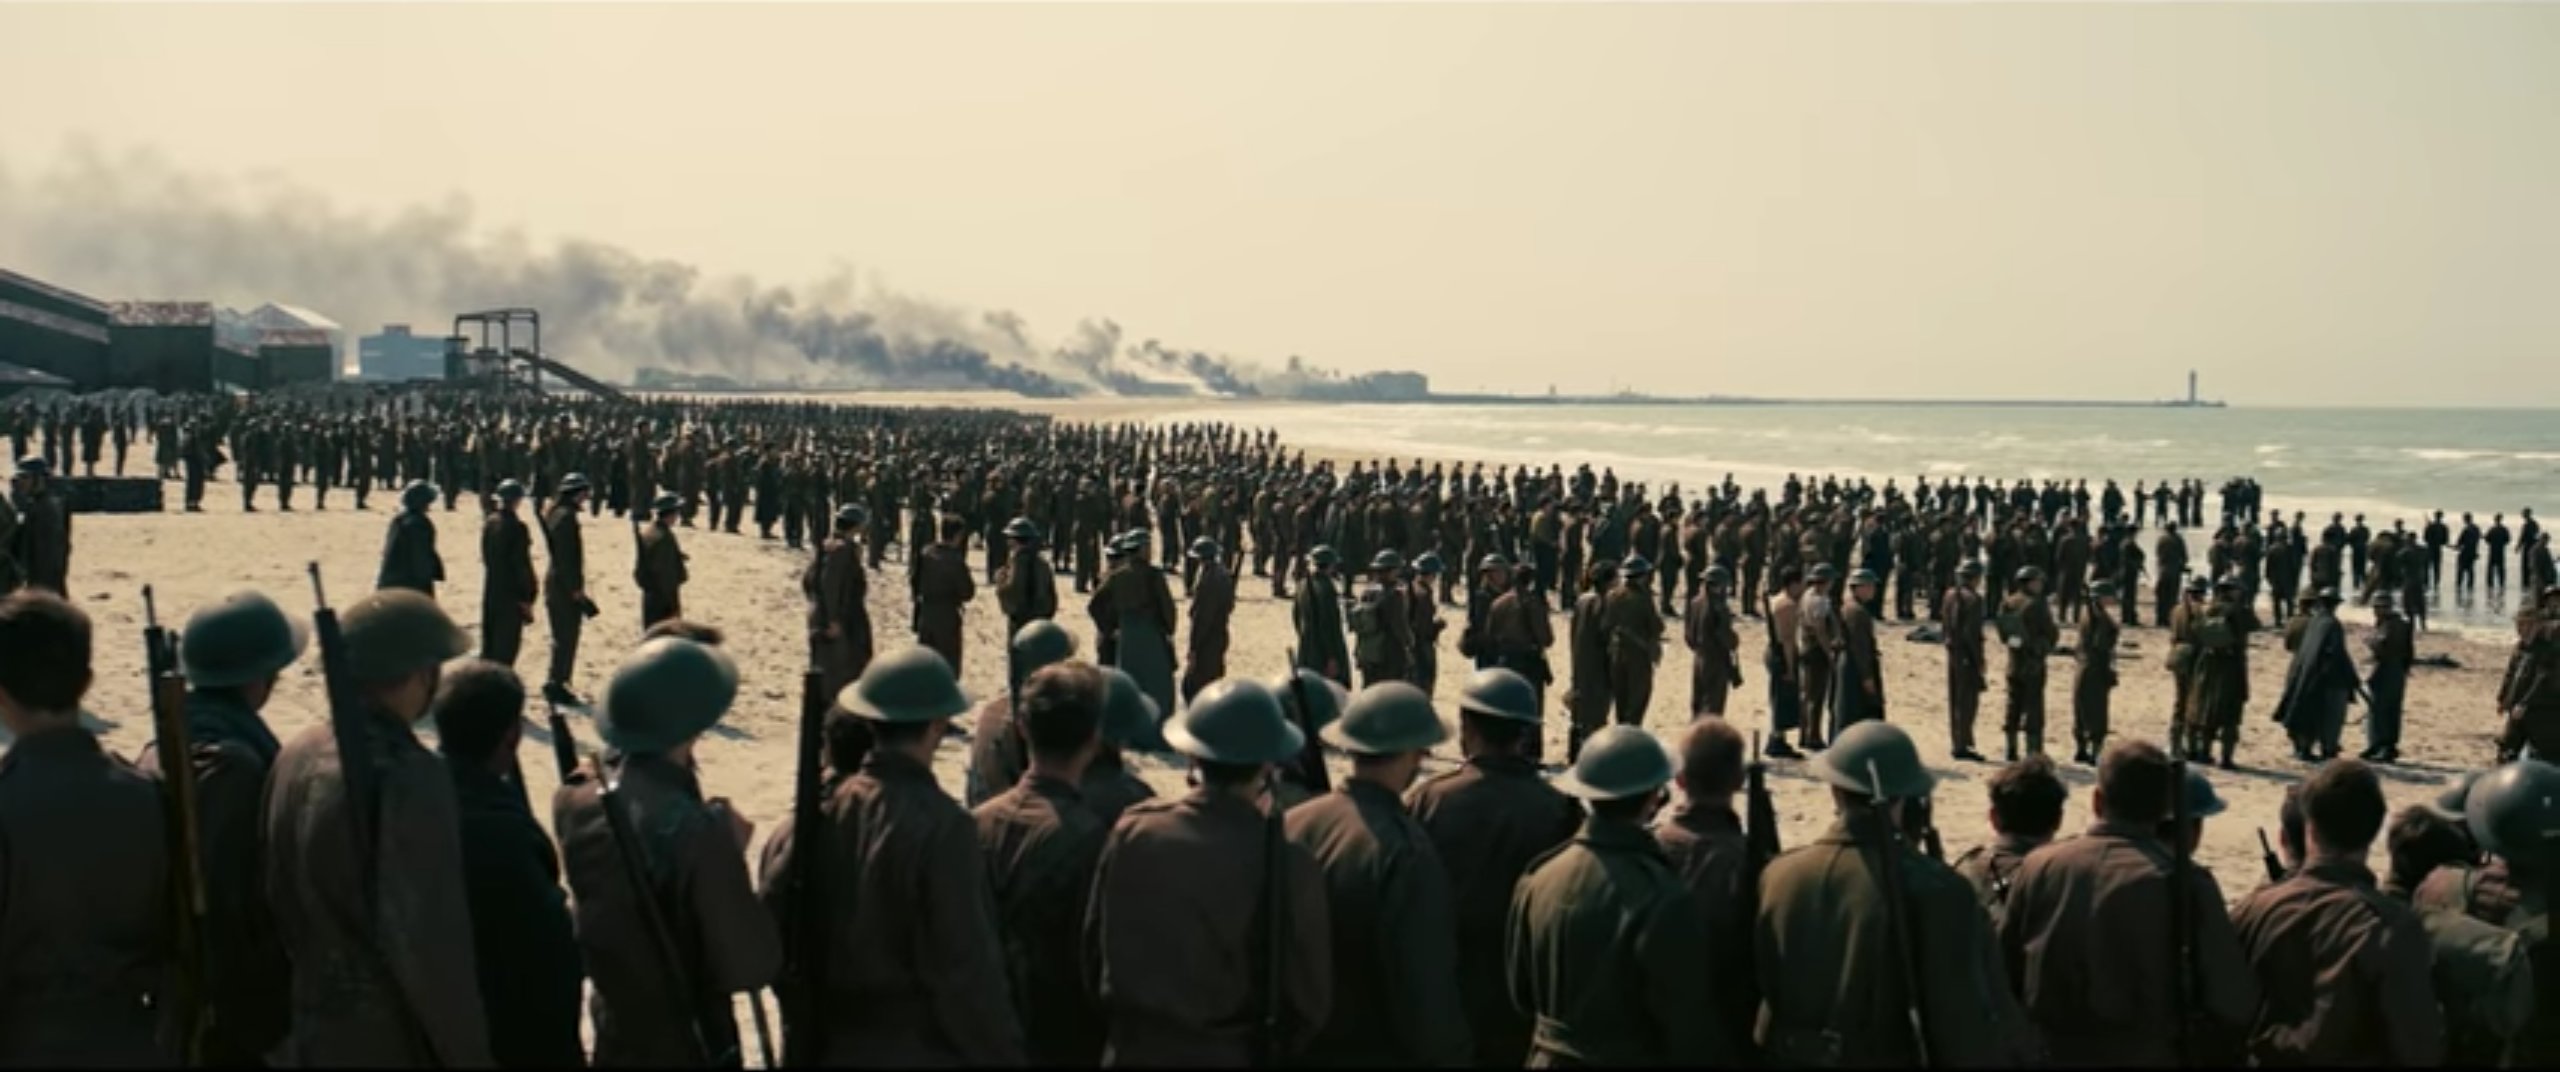 《敦刻尔克》即将上映 皇家空军表现与电影截然相反_搜狐军事_搜狐网